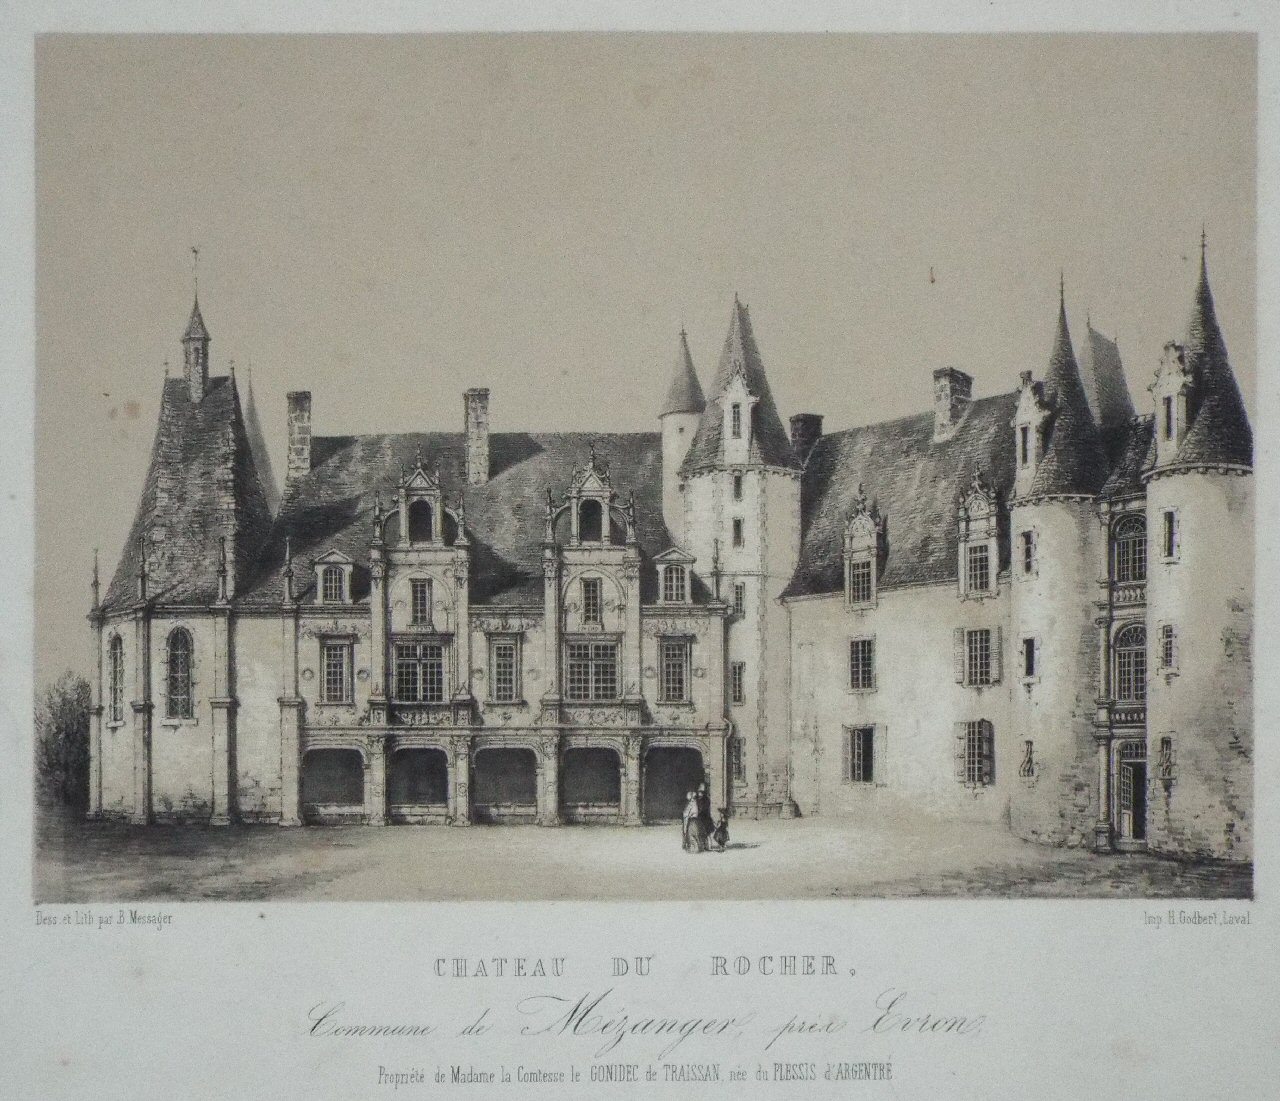 Lithograph - Chateau de Rocher, Commune de Mezanger pres Evron - Messager